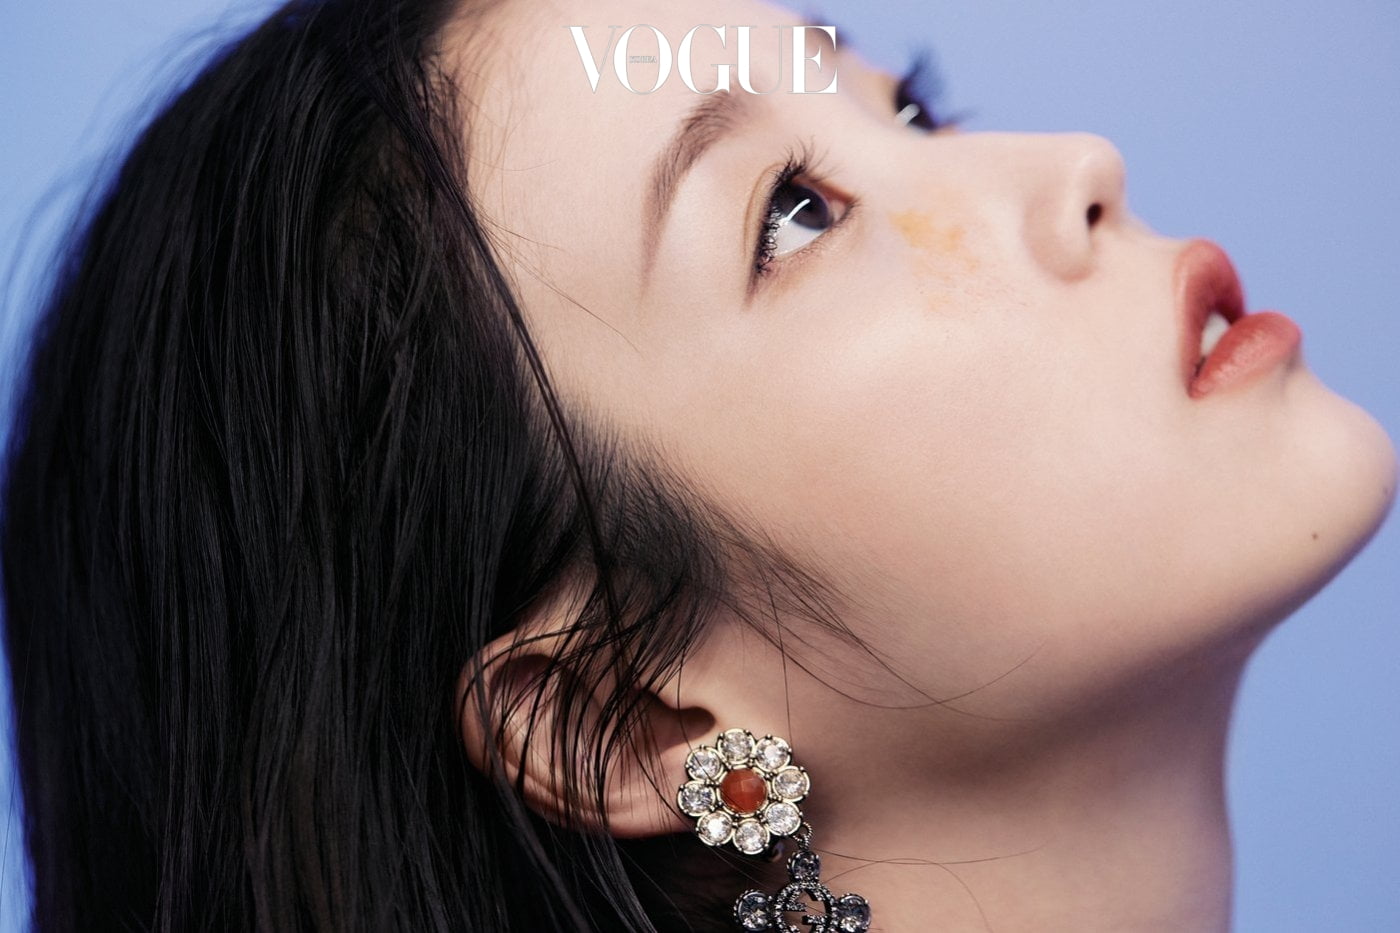 IU, face, Vogue magazine, closeup